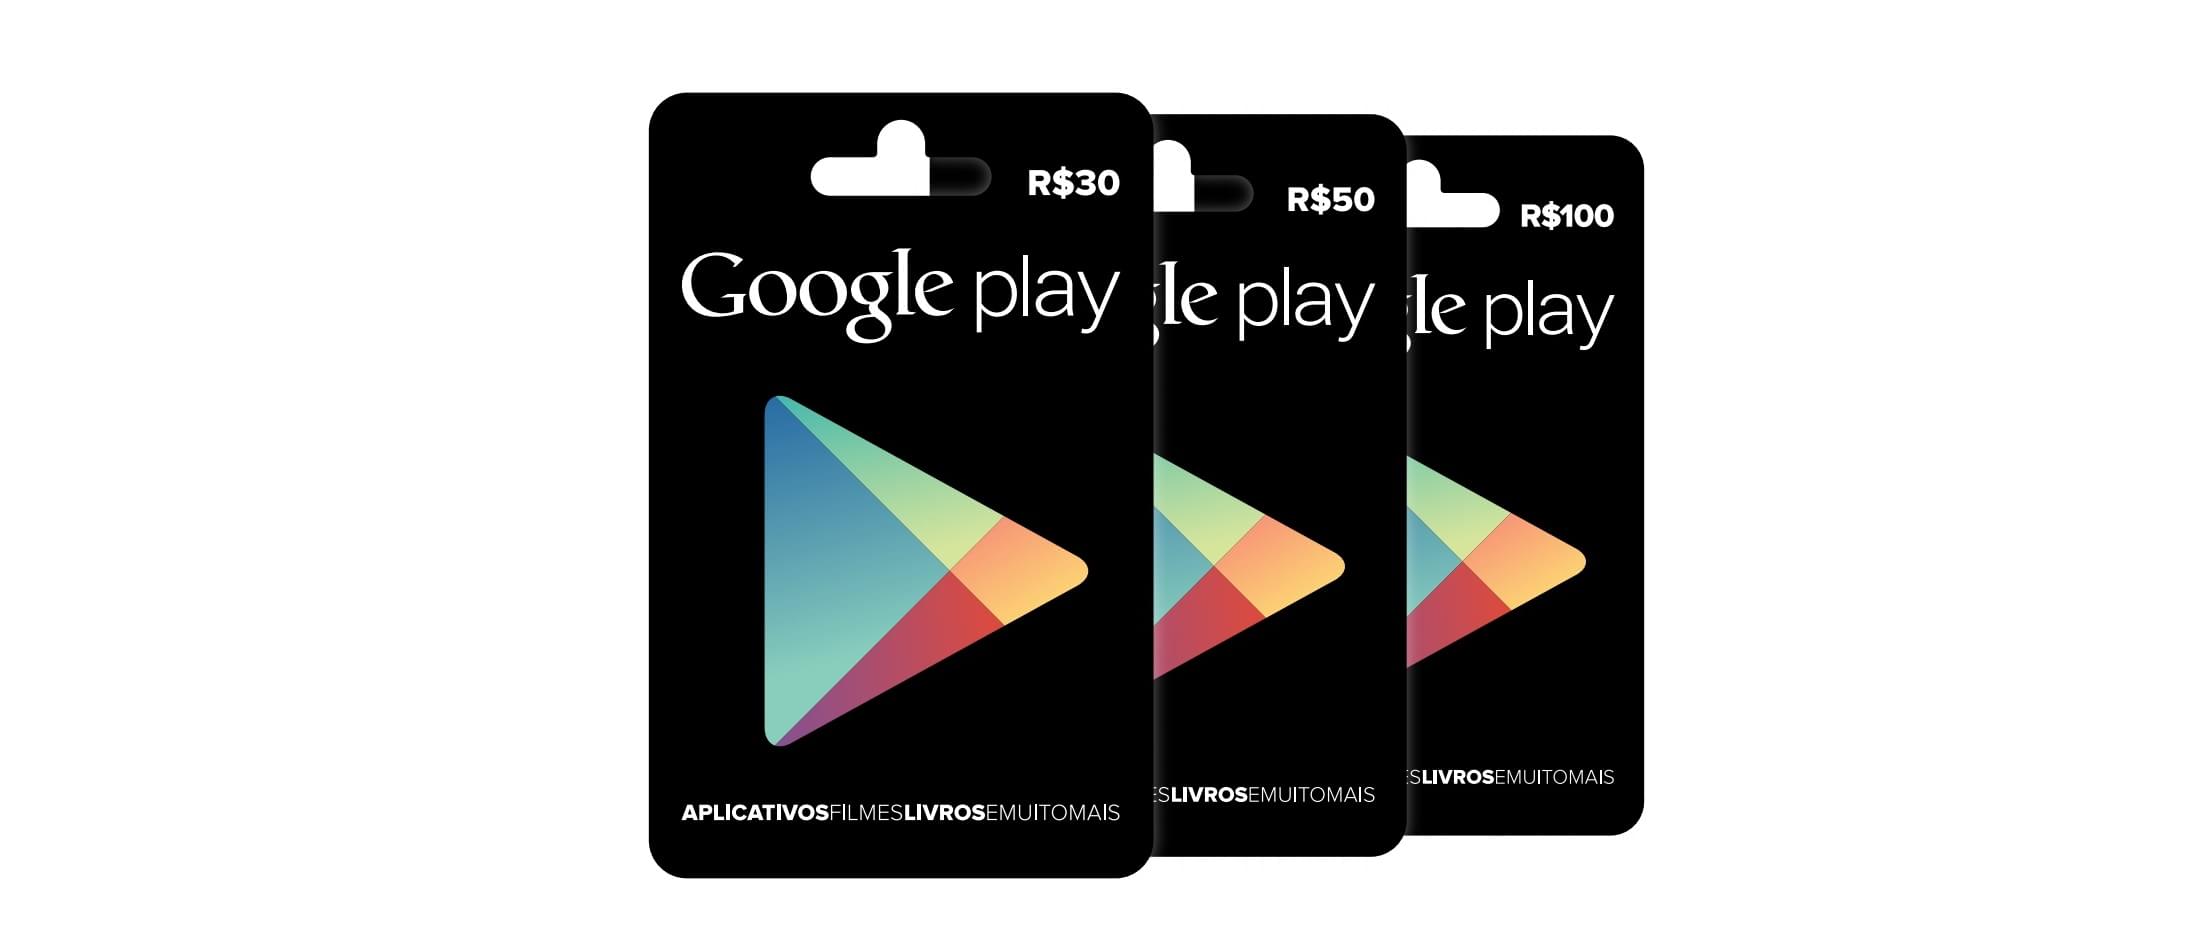 Google Play Gift Cards Brasileiros Podem Ser Encontrados A Partir De Hoje Tecmundo - como pagar robux com cartao da google play